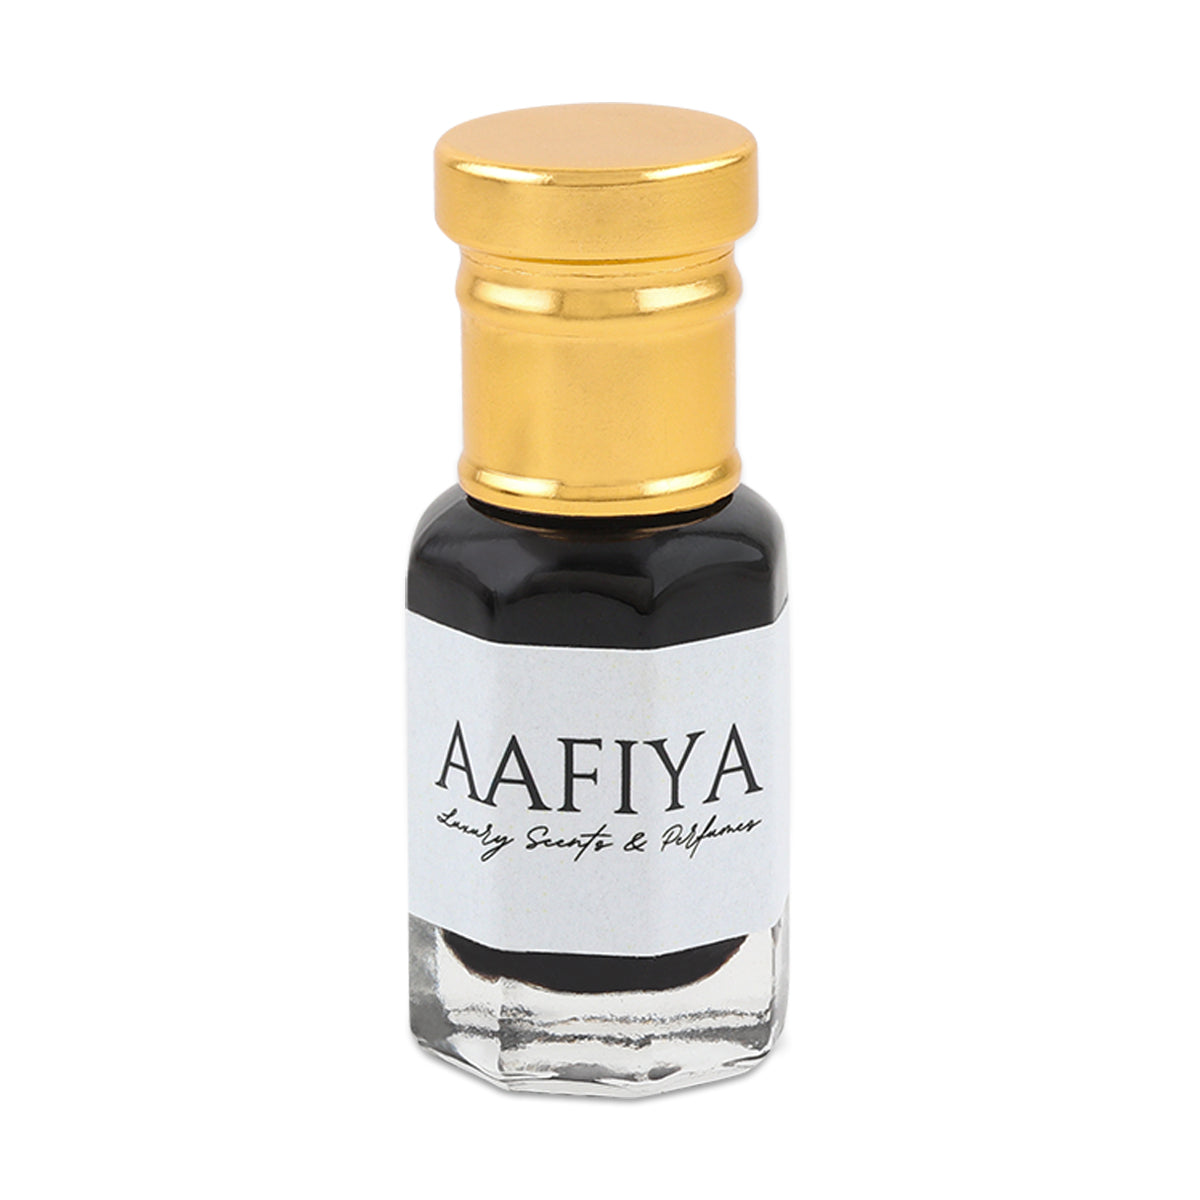 Oud Amber Aafiya Luxury Scents & Perfumes